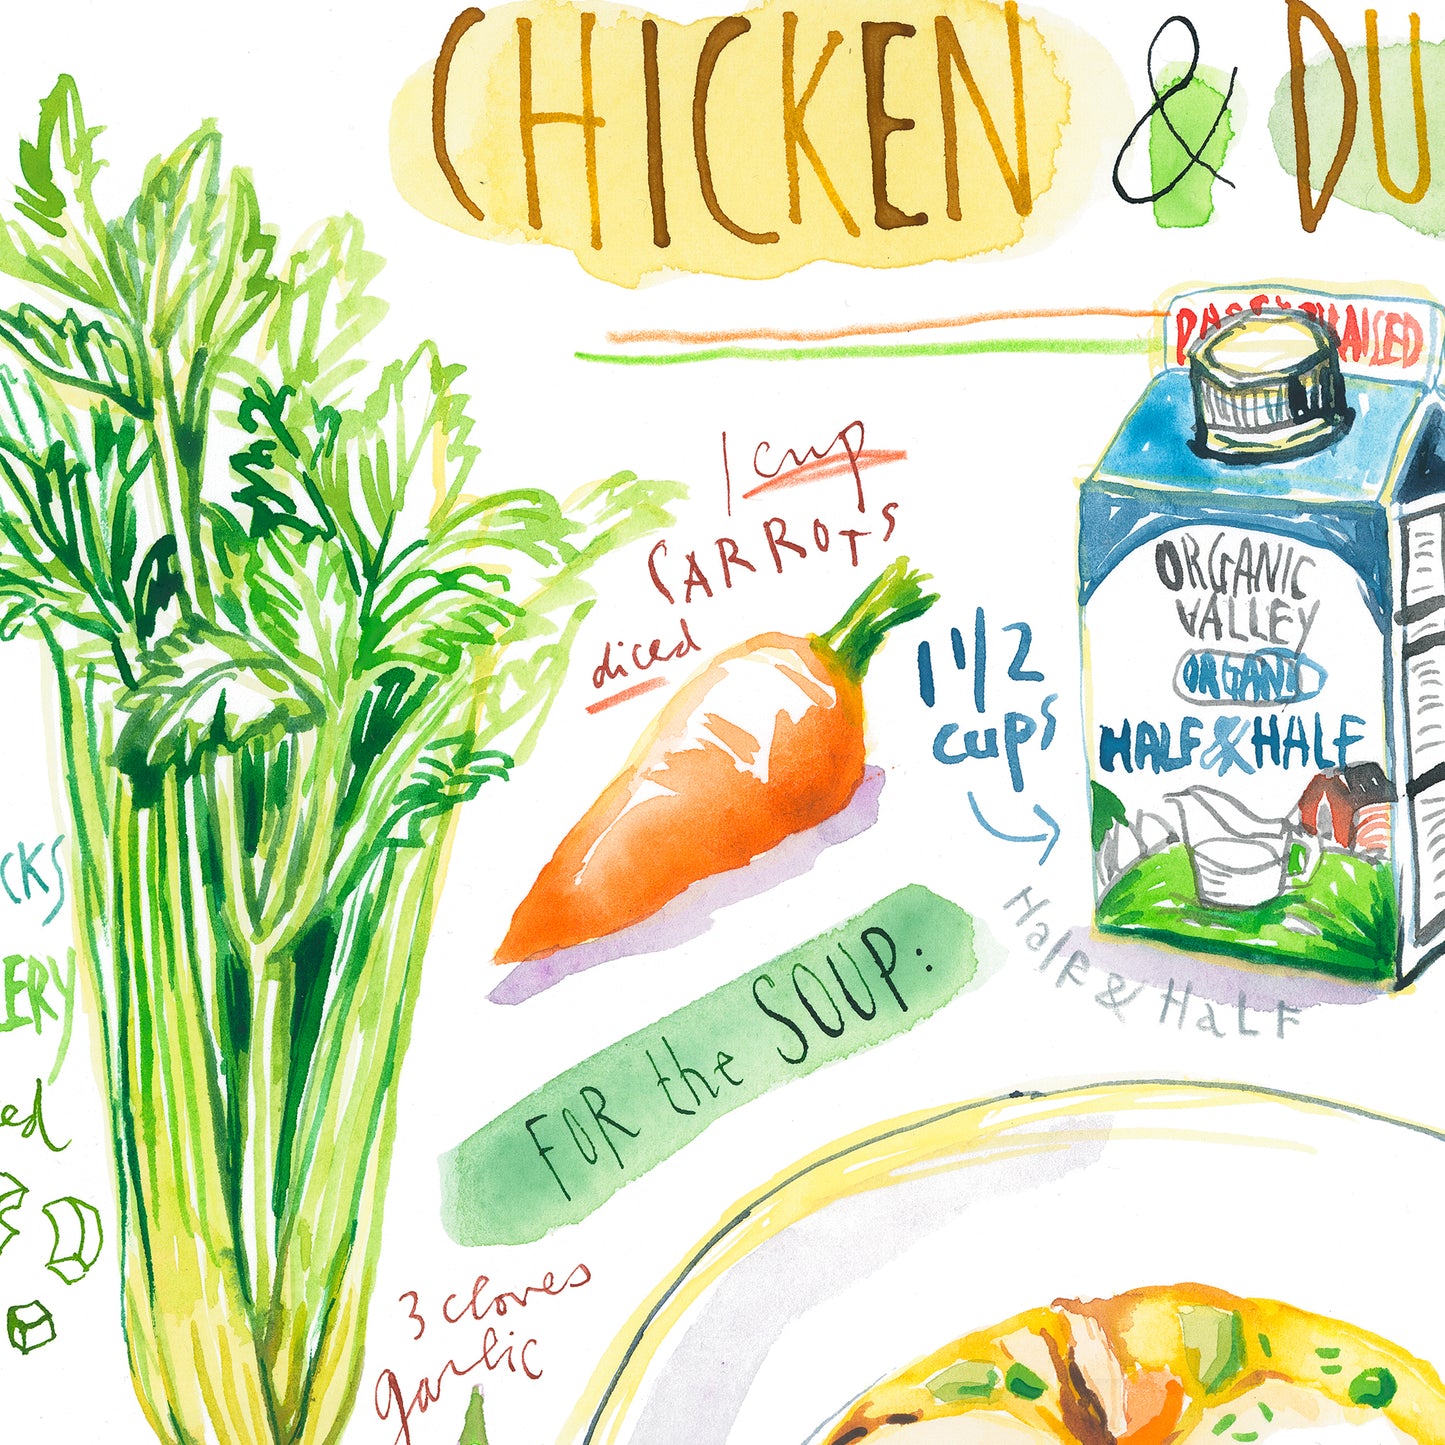 Chicken and Dumplings - Affiche illustrée de la recette